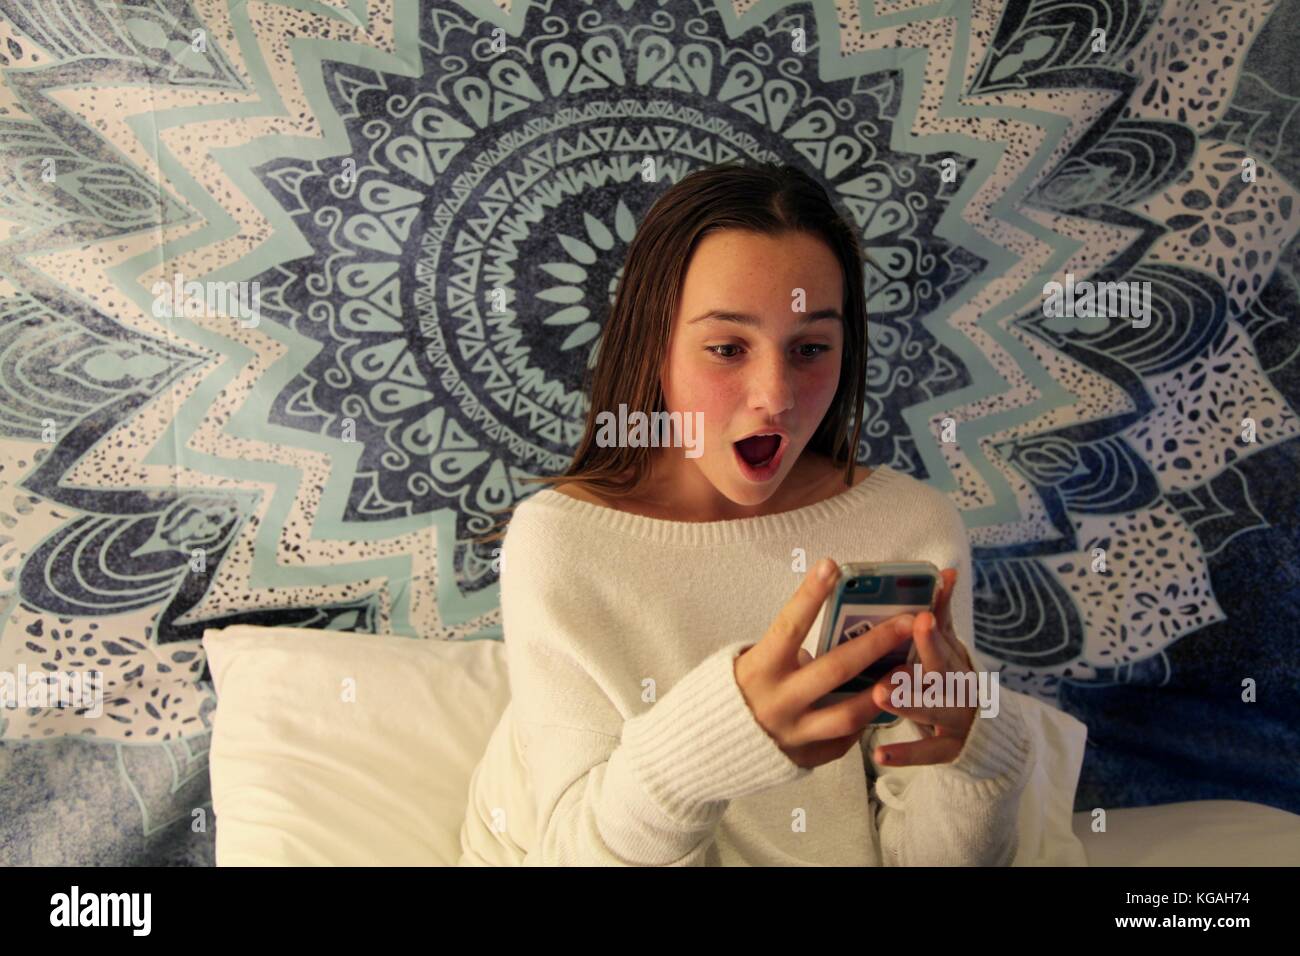 Jeune adolescente des sms sur un téléphone mobile, l'air choqué de l'écran Banque D'Images